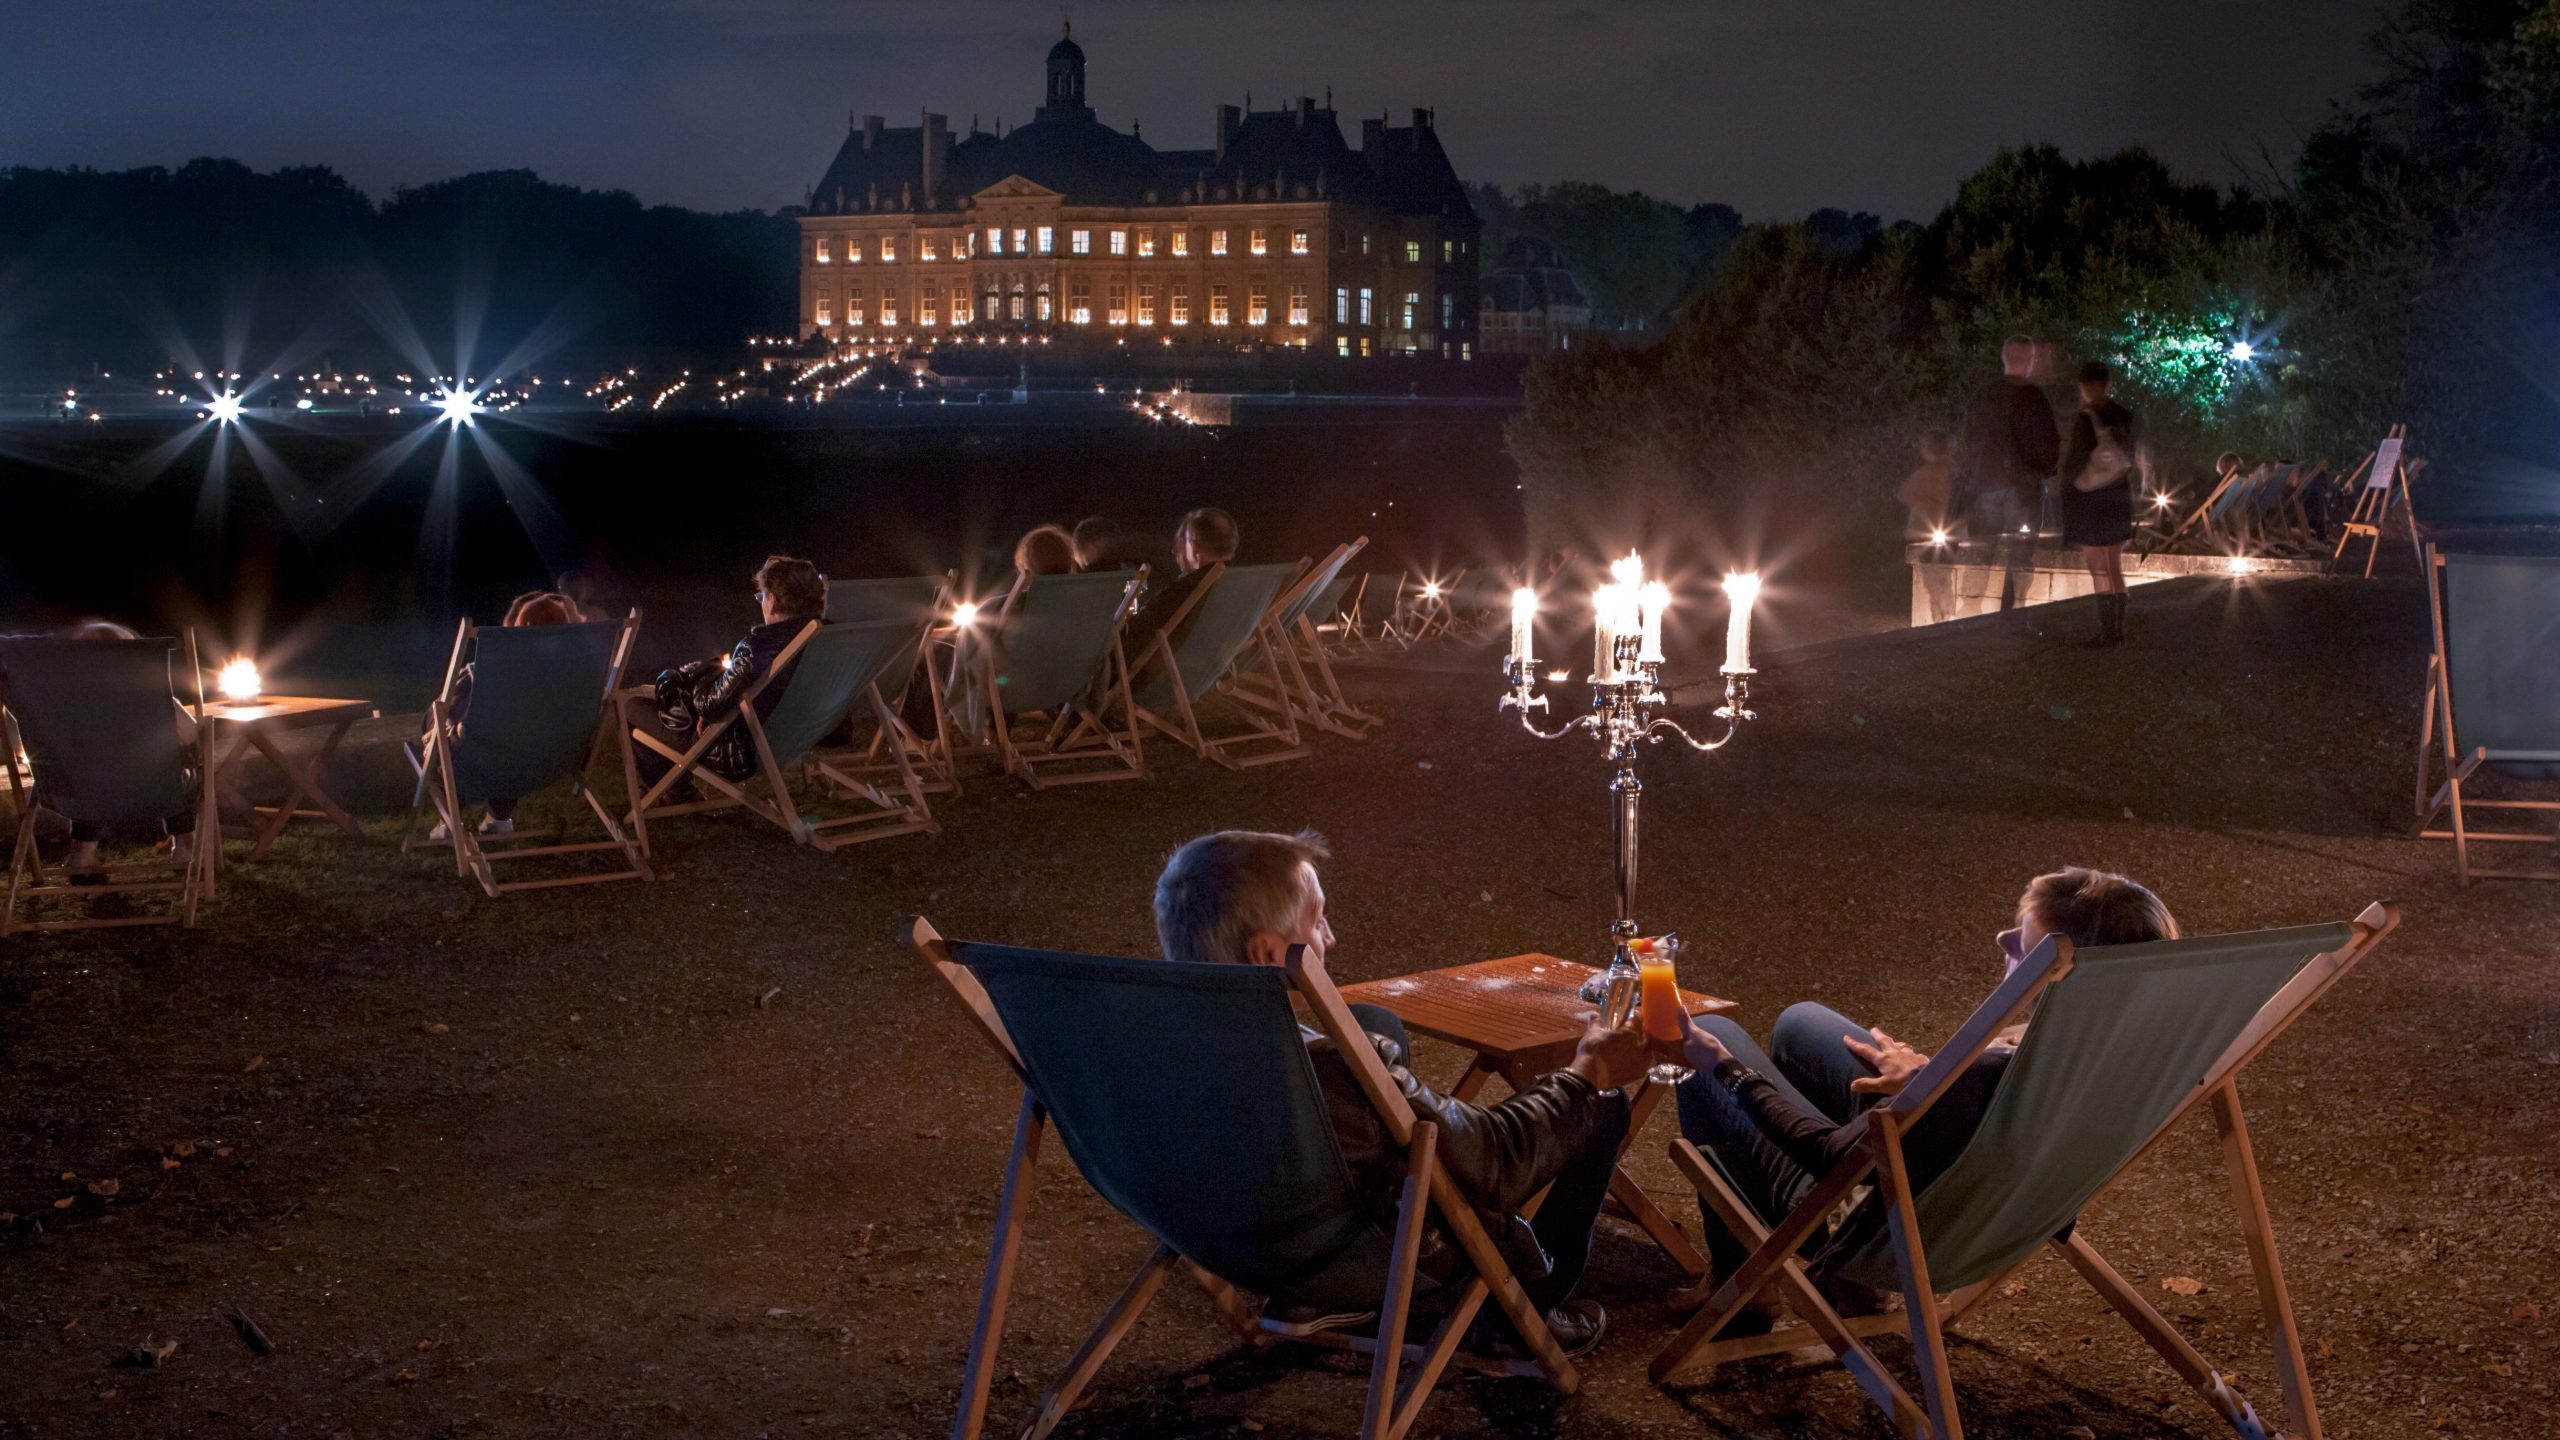 Désormais, tous les samedi et vendredi soirs, le grand Château de Vaux-le-Vicomte organise des Soirées aux Chandelles. Un moment exceptionnel à vivre jusqu’au 30 septembre 2023.